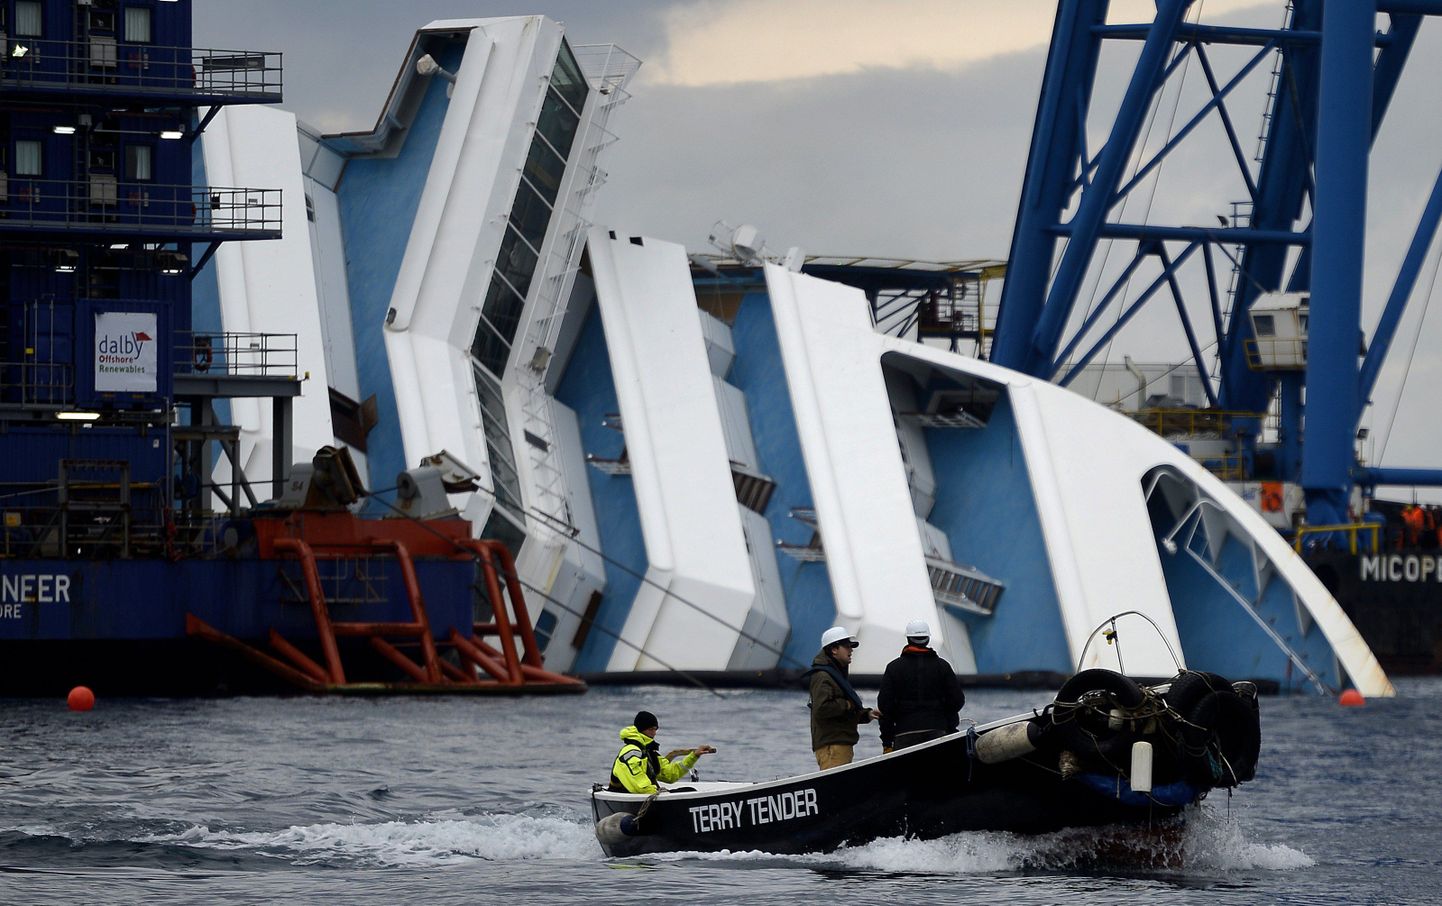 Aasta pärast Itaalia rannikul aset leidnud laevaõnnetust on Costa Concordia vrakk endiselt Giglio saare lähedal, kus see karile sõitis.